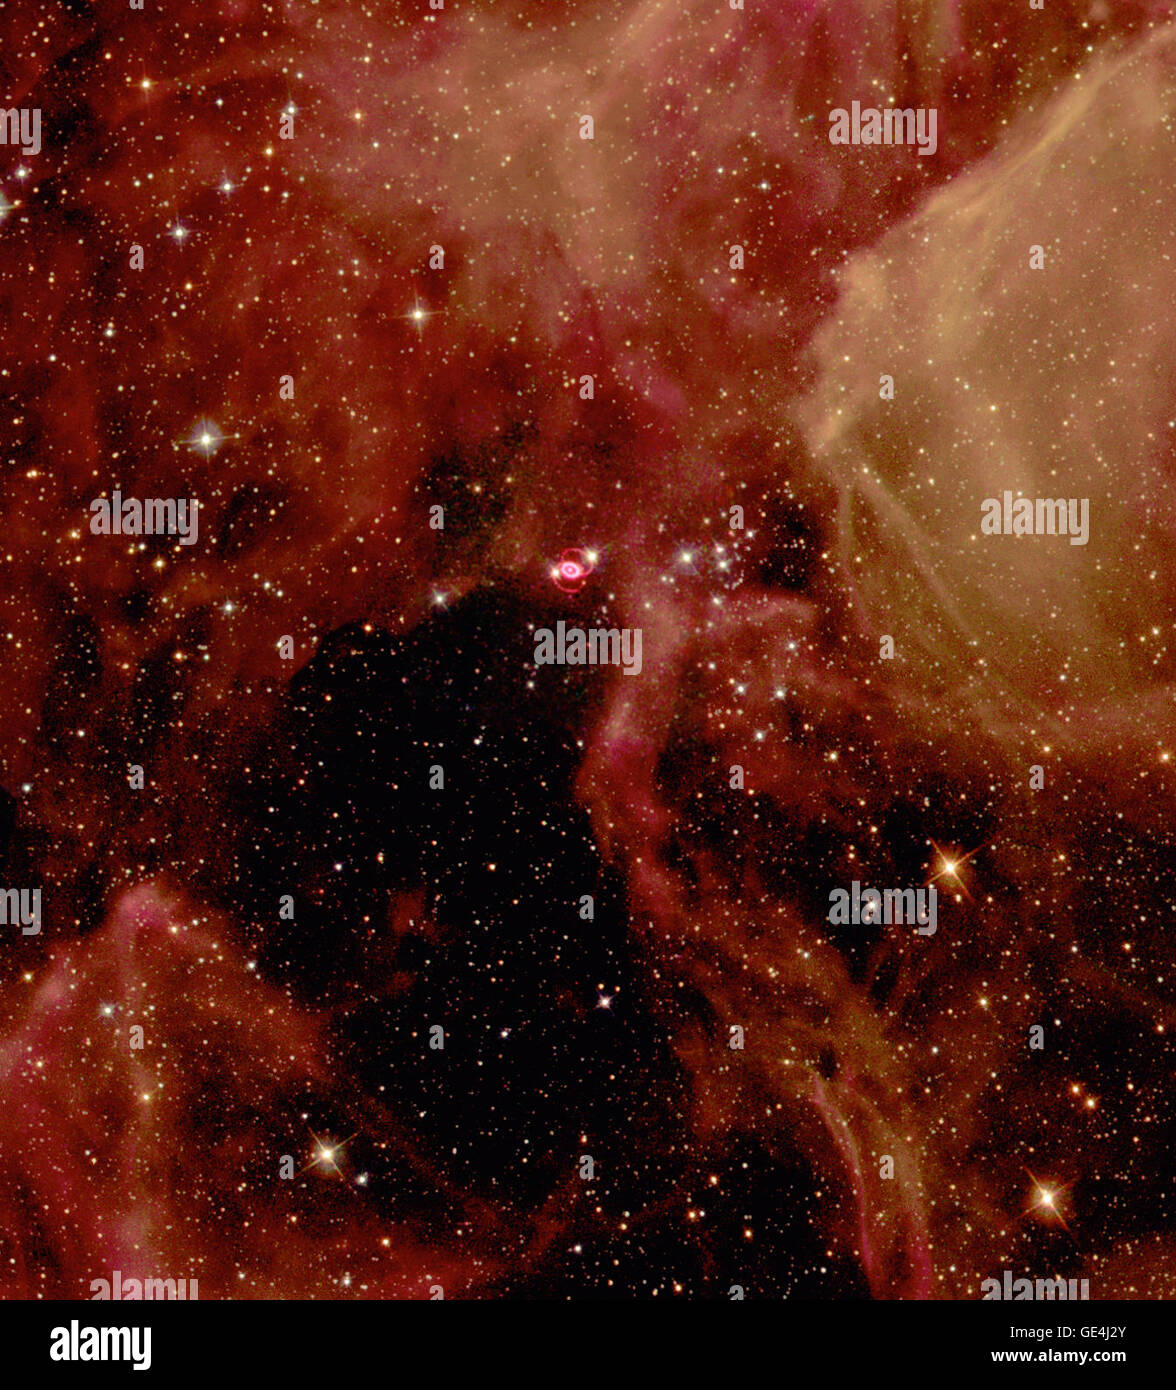 Glitzernde Sterne und Strähnen des Gases schaffen eine atemberaubende Kulisse für die Selbstzerstörung eines massereichen Sterns Supernova 1987A, in der großen Magellanschen Wolke, einer nahe gelegenen Galaxie genannt. Astronomen in der südlichen Hemisphäre Zeuge die brillante Explosion dieses Sterns am 23. Februar 1987. Das Hubble Space Telescope der NASA Bild dargestellt, ist die Supernova-Überrest, umgeben von inneren und äußeren Ringe des Materials, in einem Wald von ätherischen, diffuse Wolken aus Gas eingestellt. Diese dreifarbige Bild besteht aus mehreren Bildern der Supernova und der benachbarten Region genommen mit dem weiten Feld und Planeten Stockfoto